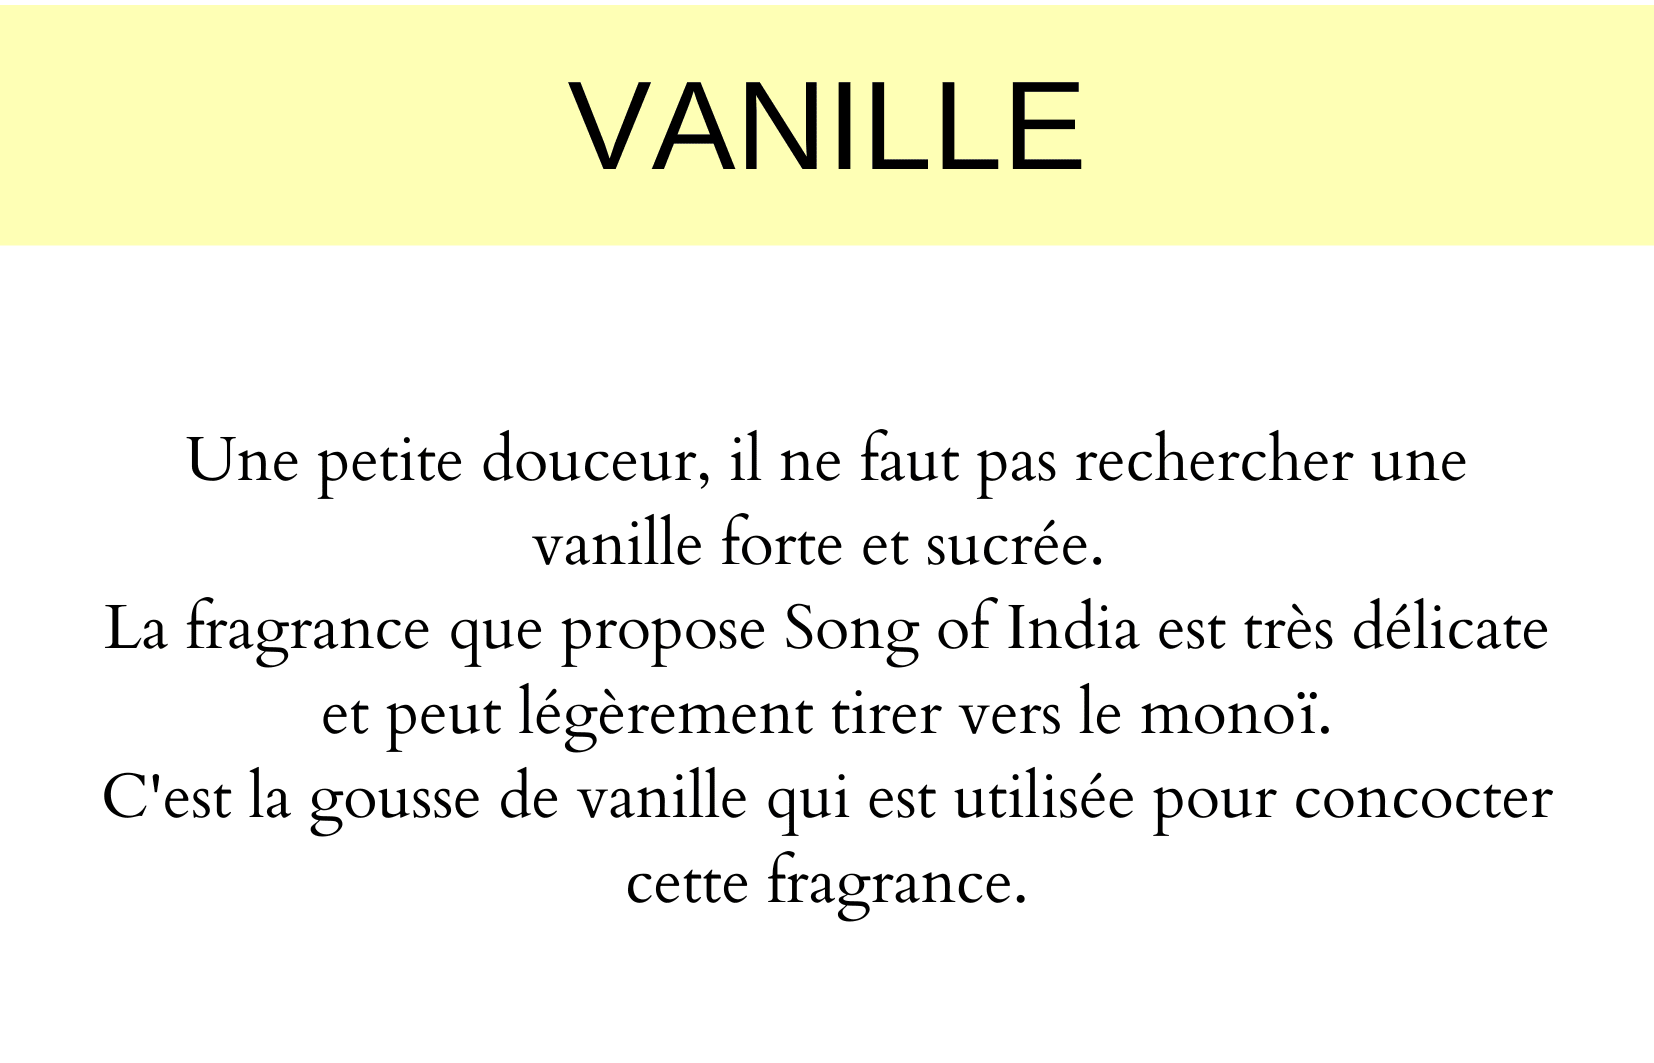 Vanille fragrance